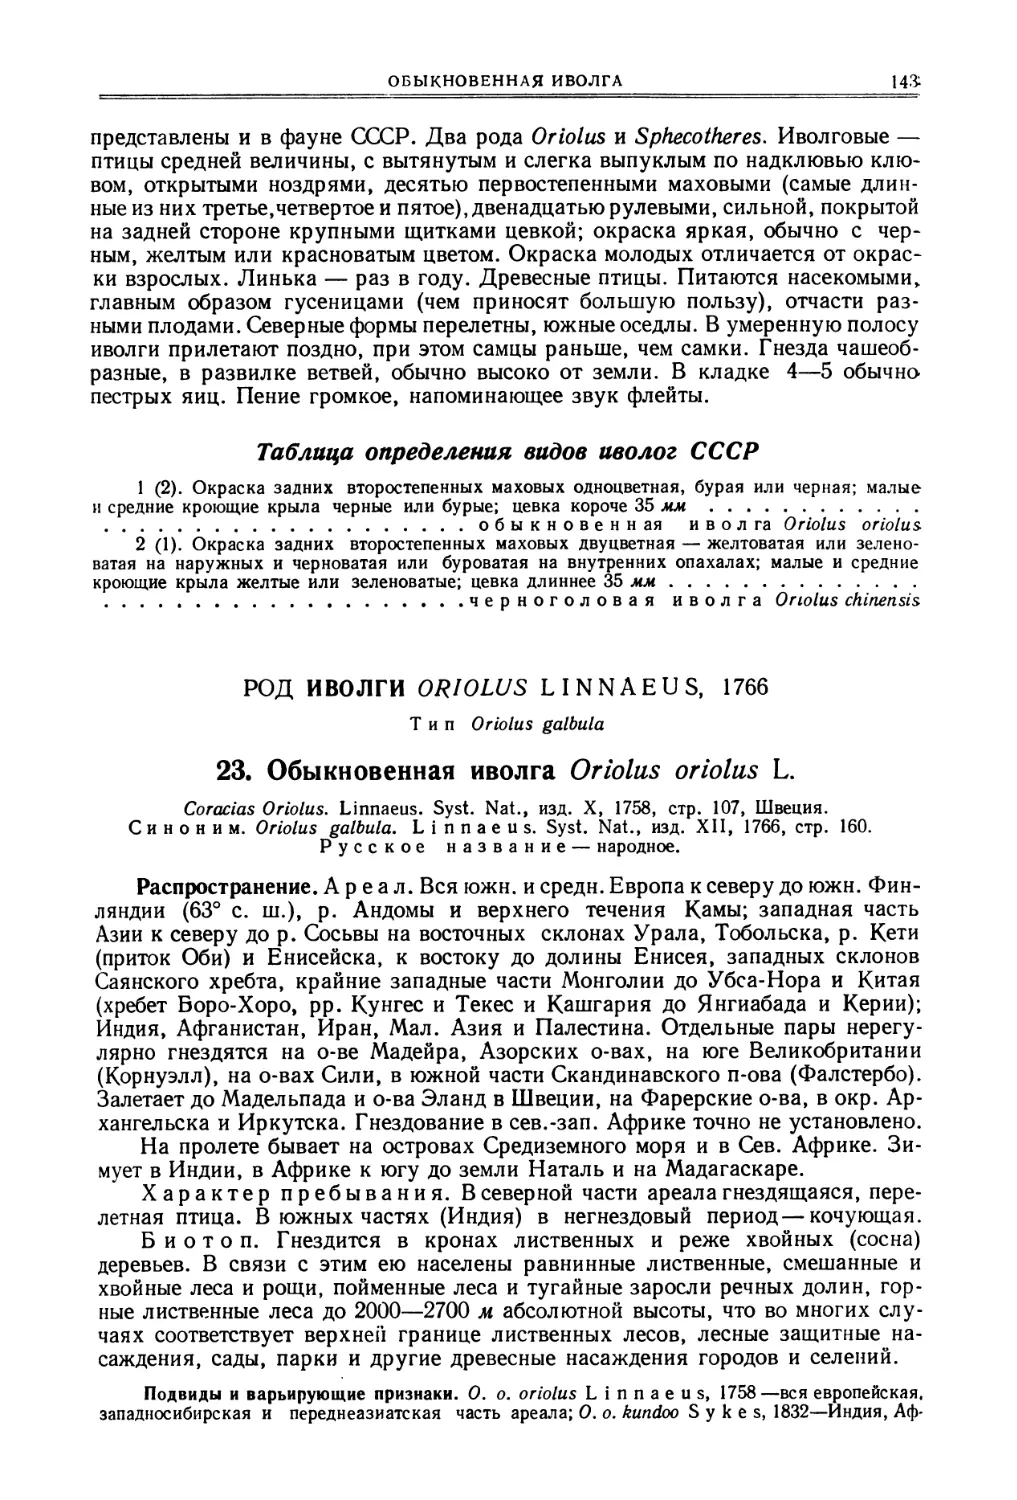 Таблица для определения видов иволог СССР
Род иволги